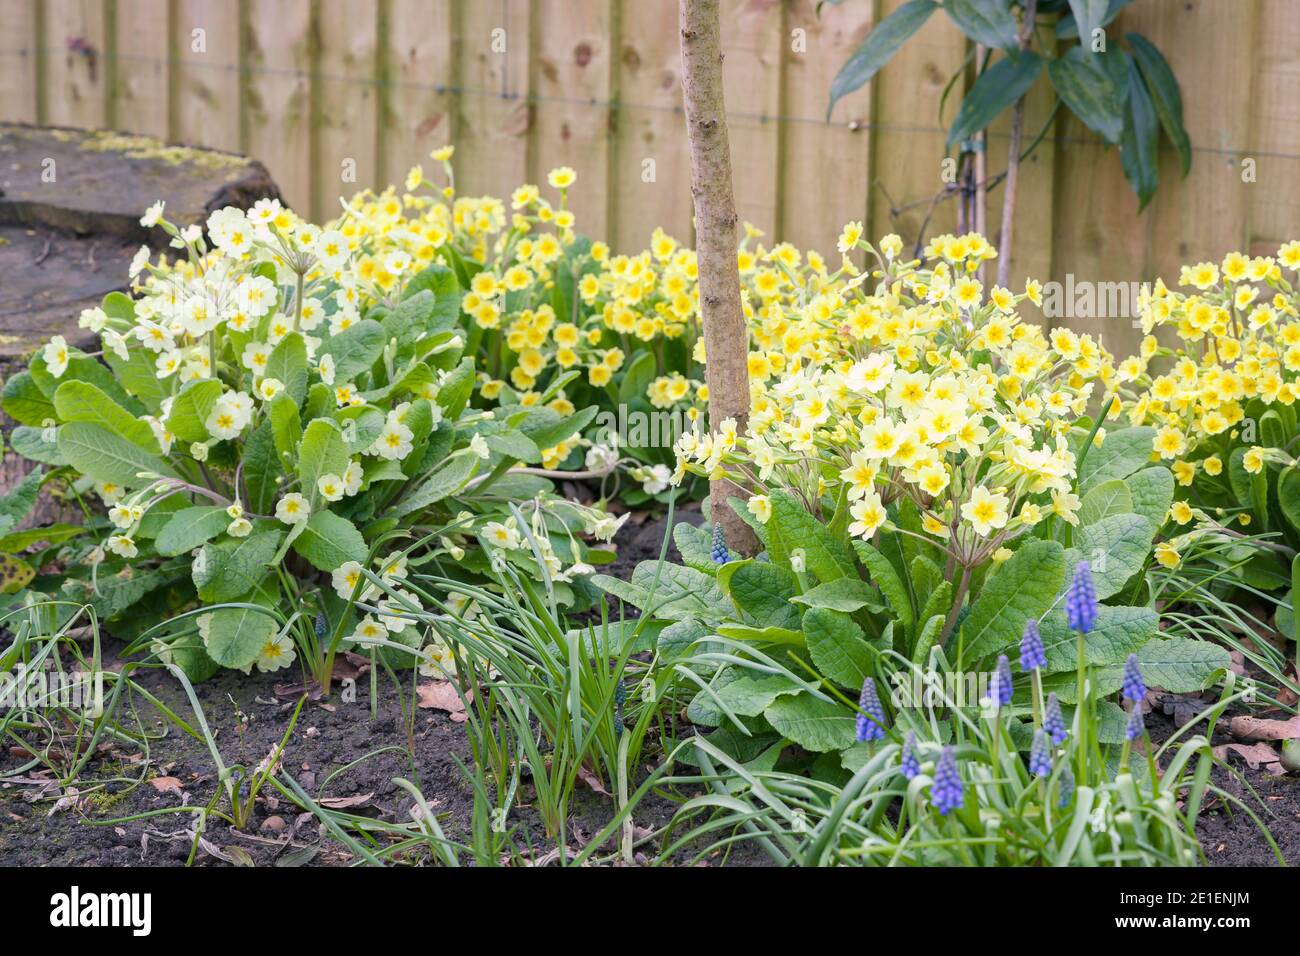 Fiori primaverili in un giardino di confine con le primerote gialle e muscari blu, Regno Unito Foto Stock